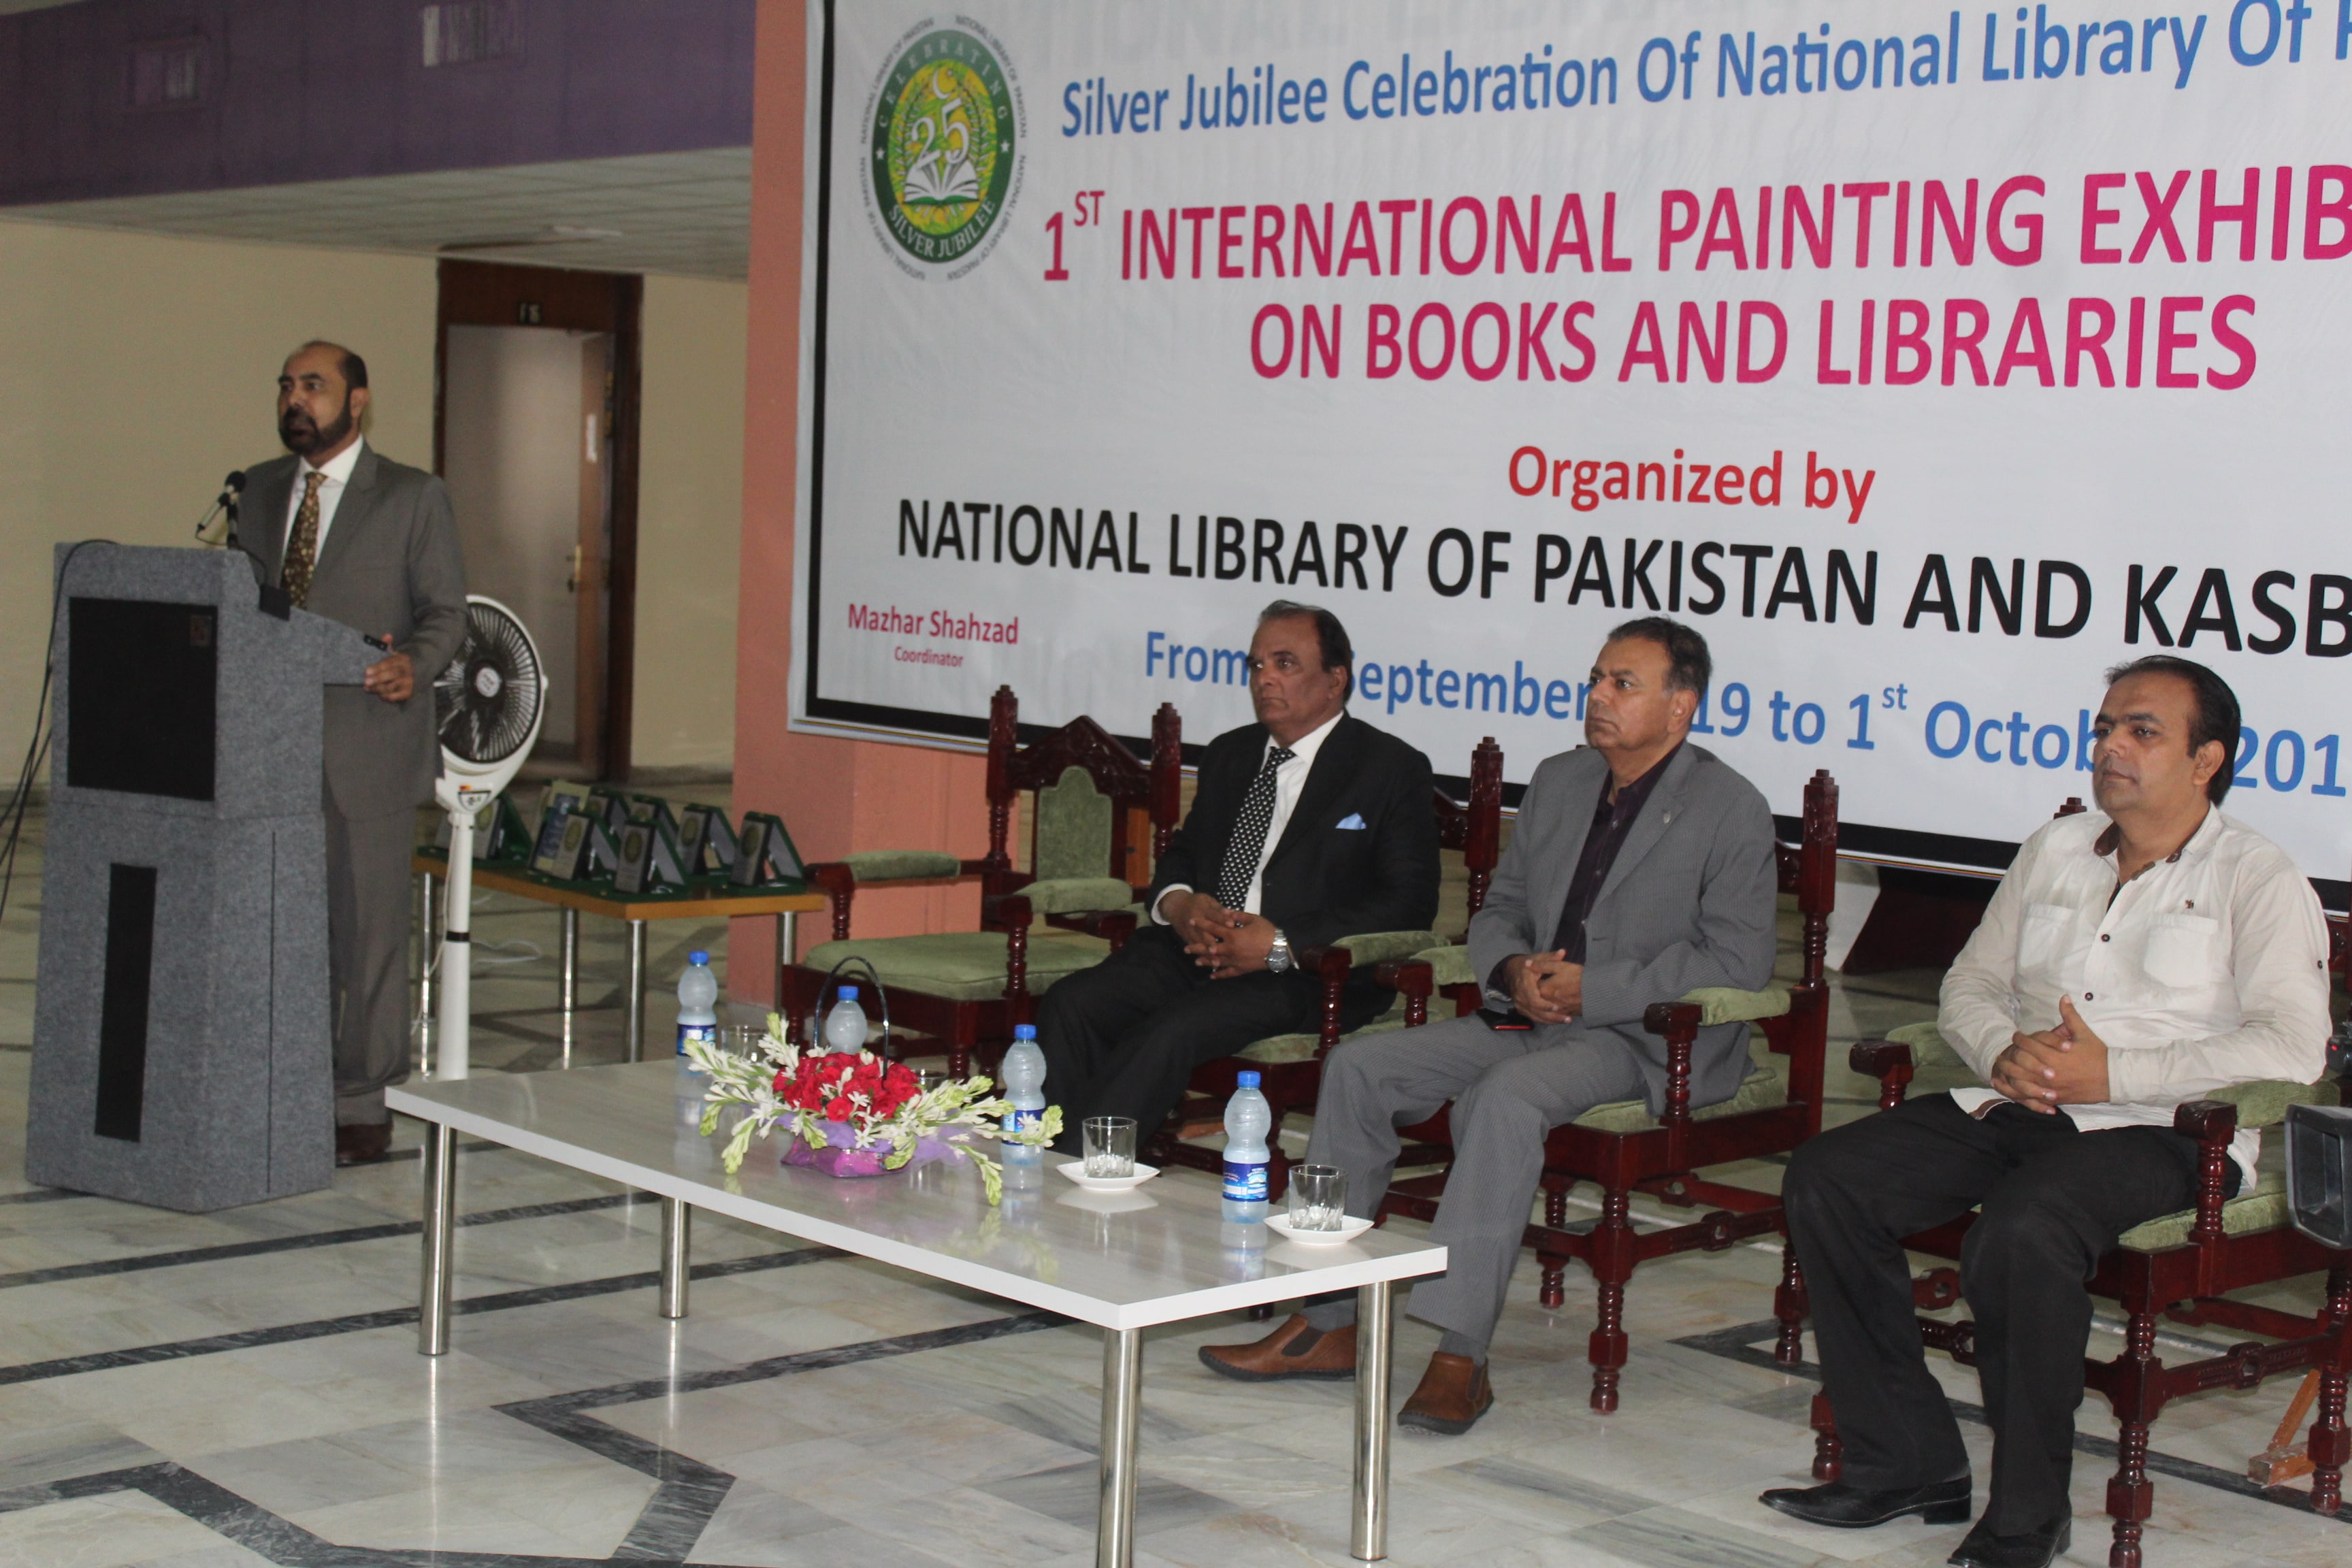 نیشنل لائبریری آف پاکستان اور کسب کمال تنظیم کے زیر اہتمام پہلی بین الاقوامی مصوری کی نمائش کا انعقاد